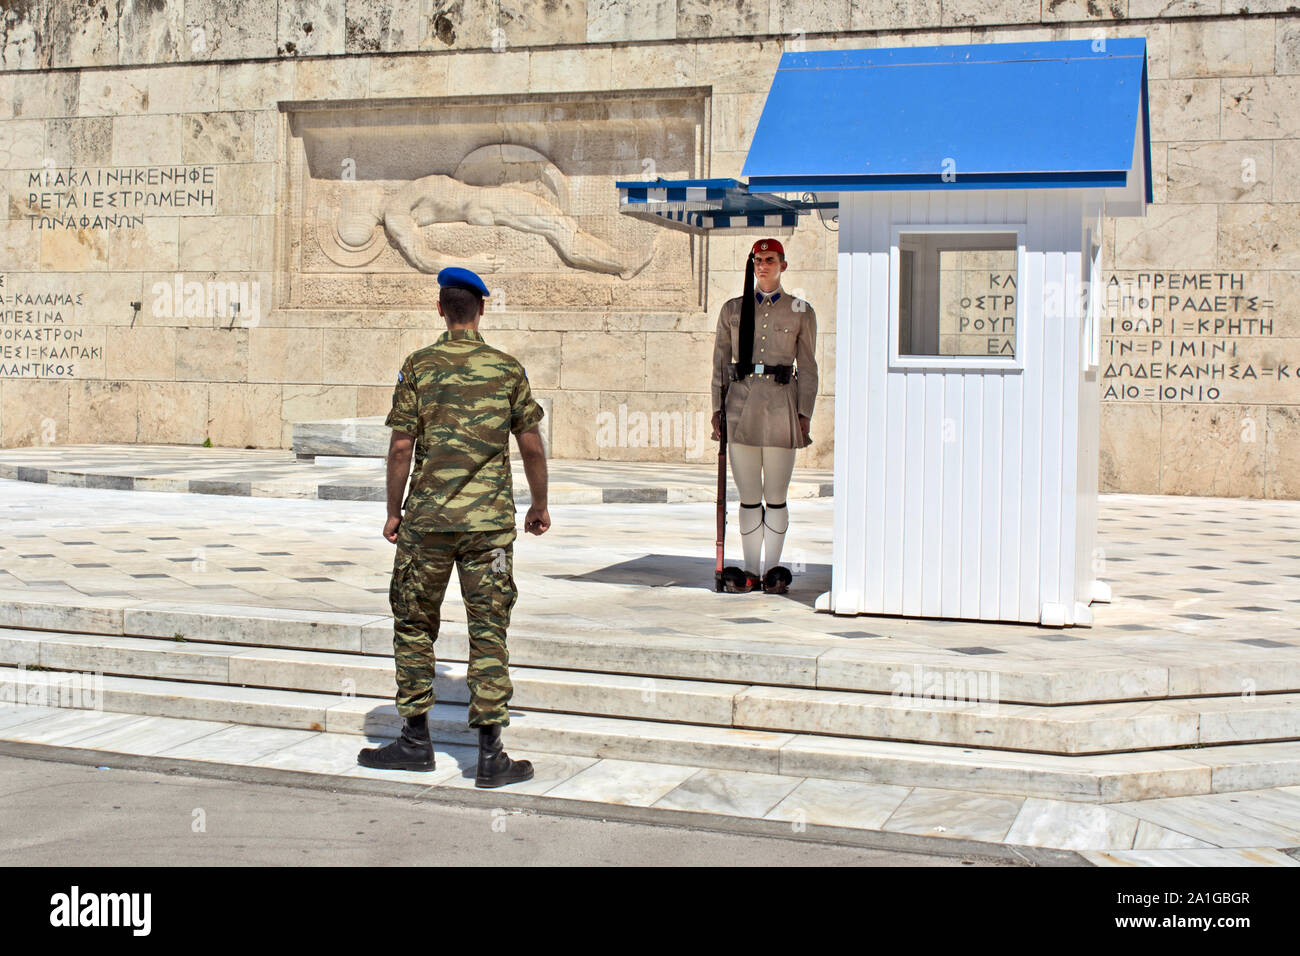 Athènes, Grèce - 04 juin 2016 Evzonese (garde présidentielle) veillent sur un monument à un soldat inconnu devant un parlement grec buildi Banque D'Images